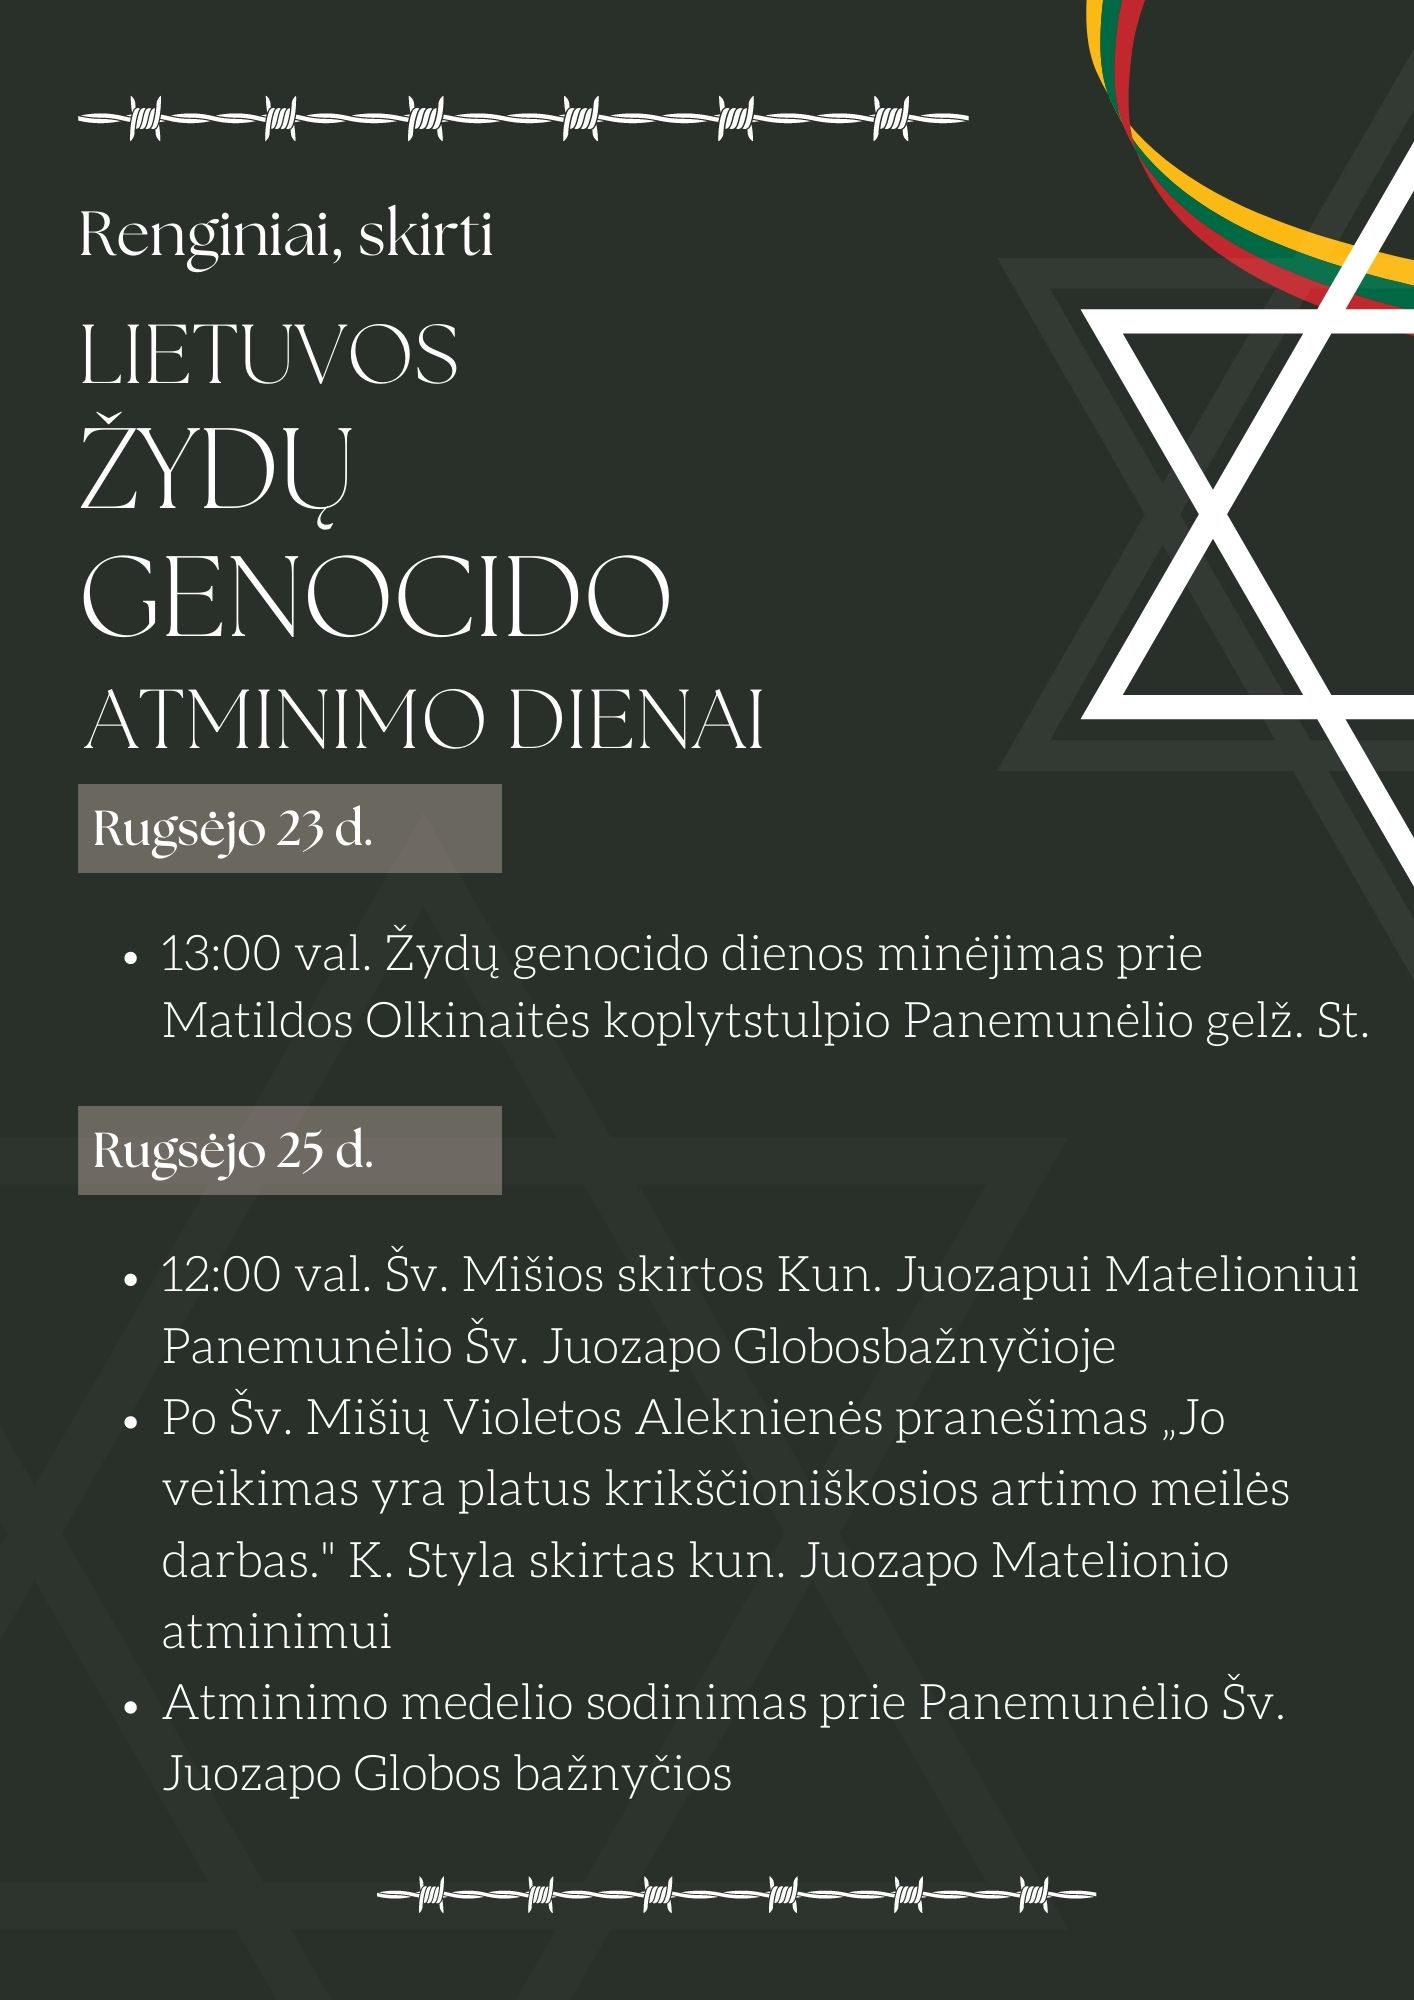 Renginiai, Lietuvos žydų genocido atminimo dienai Panemunėlio krašte